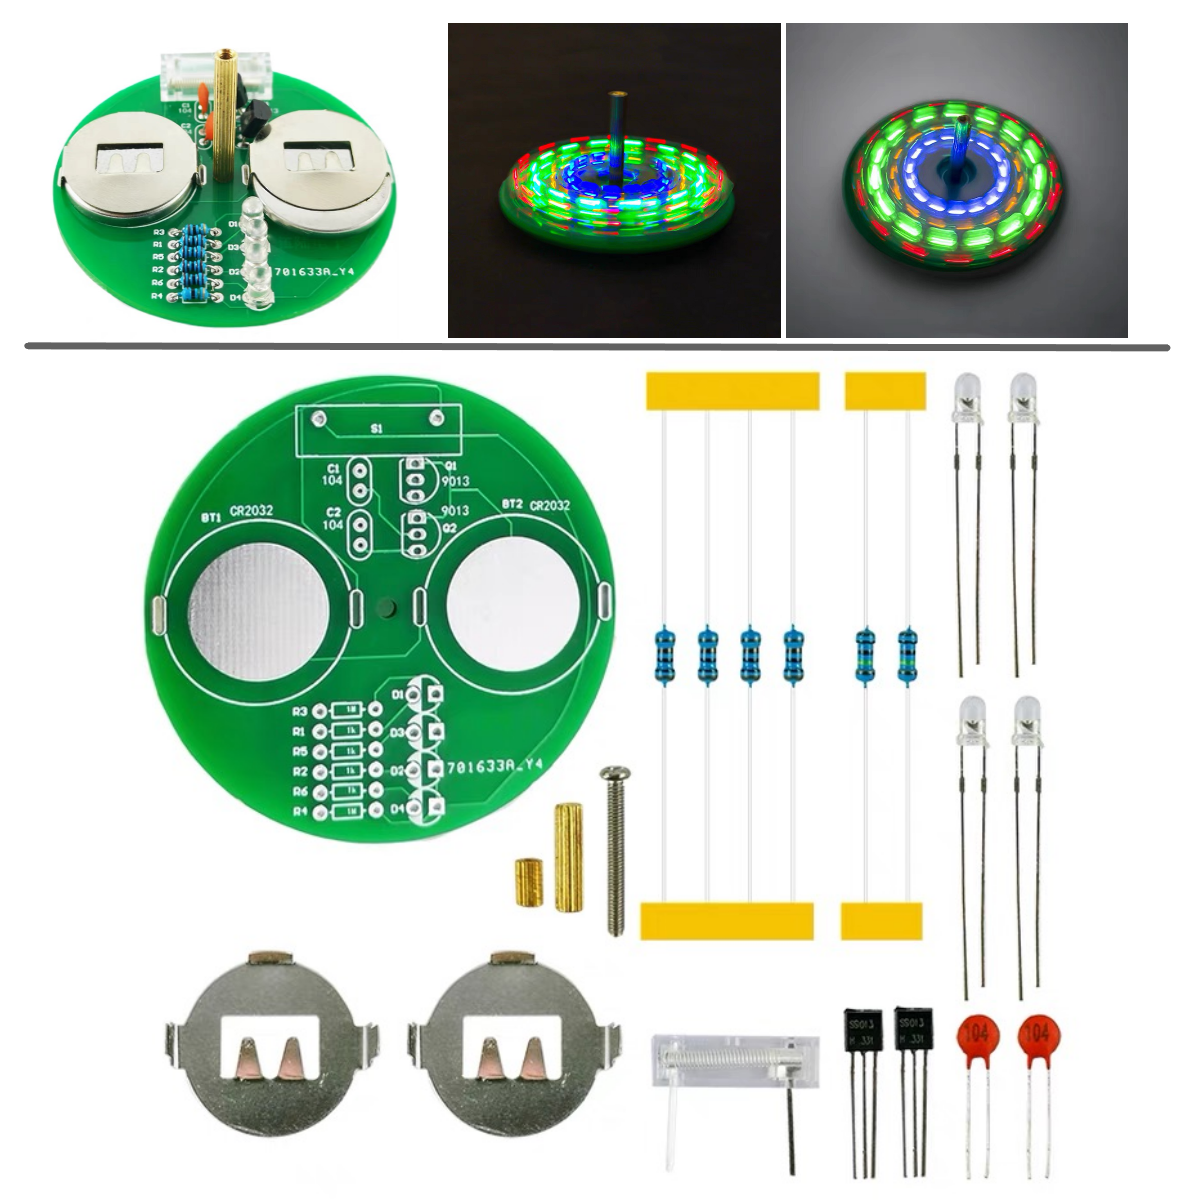 Конструктор ULIKE для пайки Электронная светодиодная юла, волчок GXED0171-001, 21 дет приспособление удерживающее для пайки 4 держателя лупа подсветка